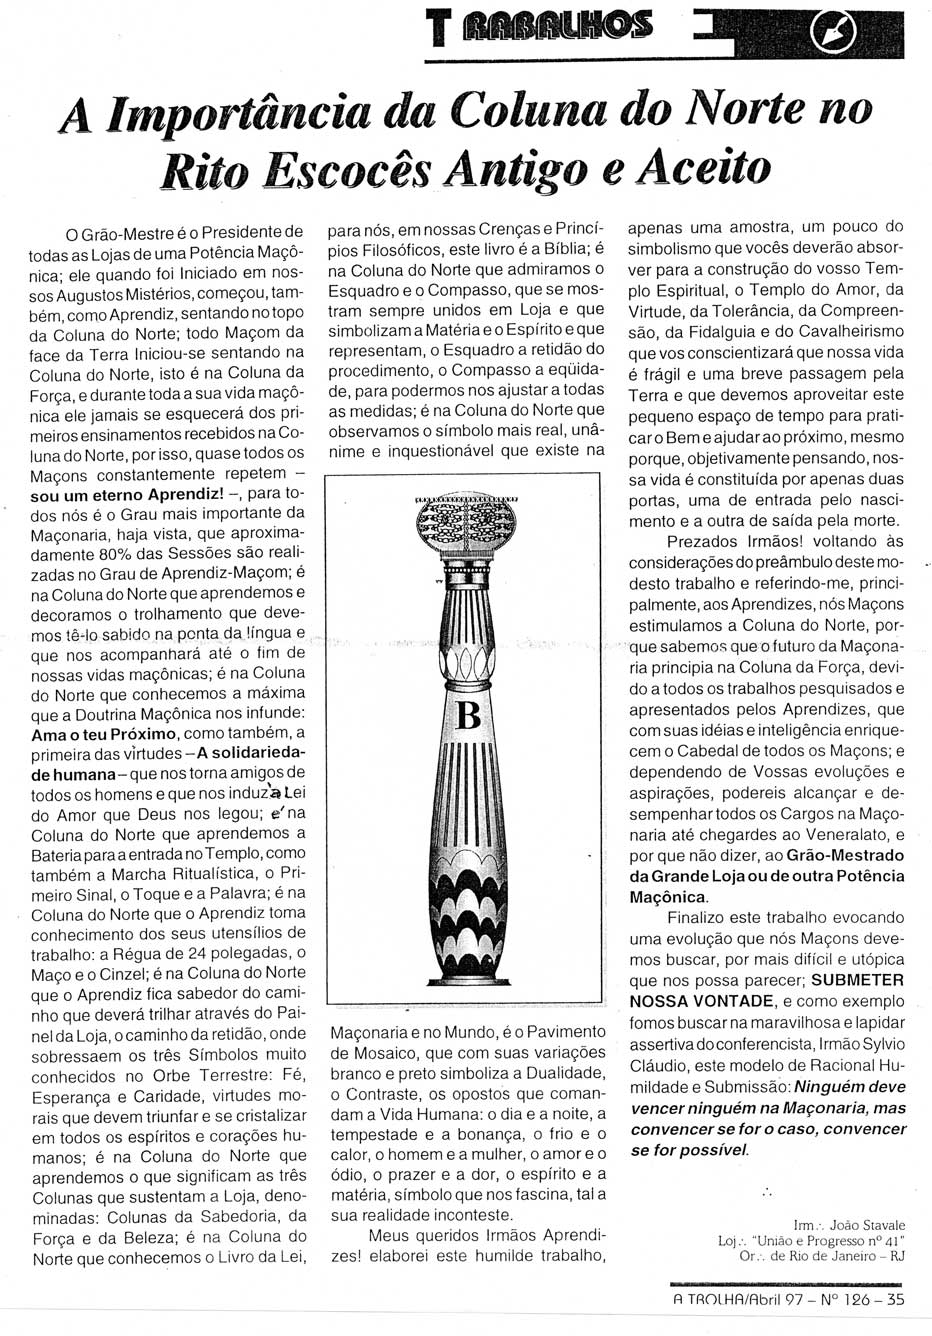 Publicações do Maçom João Stávale